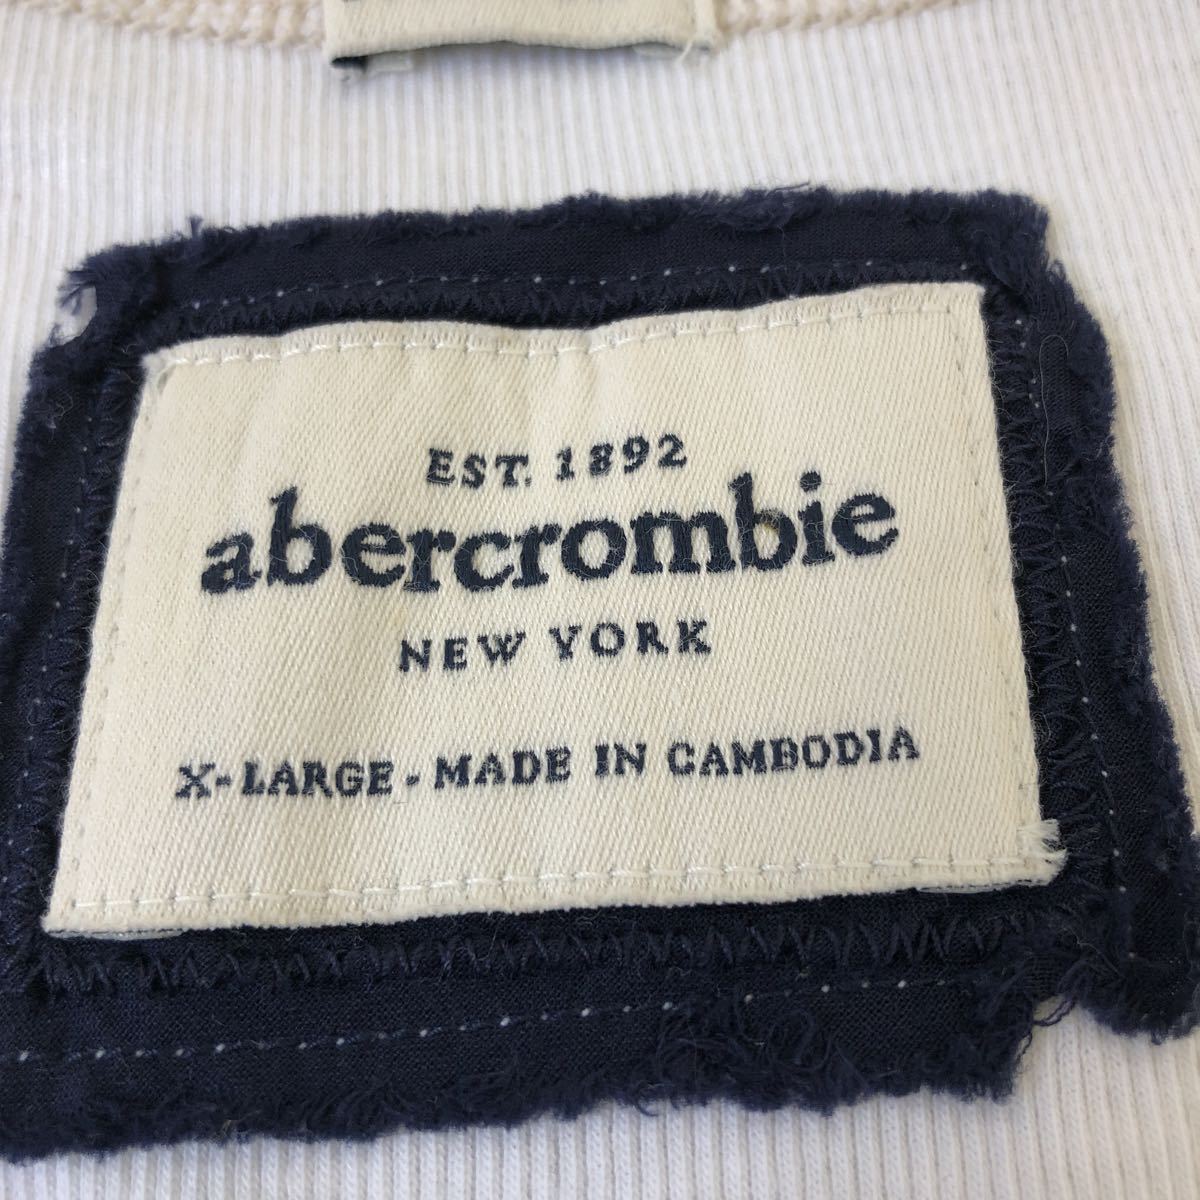  Abercrombie & Fitch abercrombie&fitch майка девушки XL( женщина S соответствует )2 раз "надеты" после черный Z хранение товар накладывающийся надеты . нижний одежда .LA.. покупка подлинный товар 